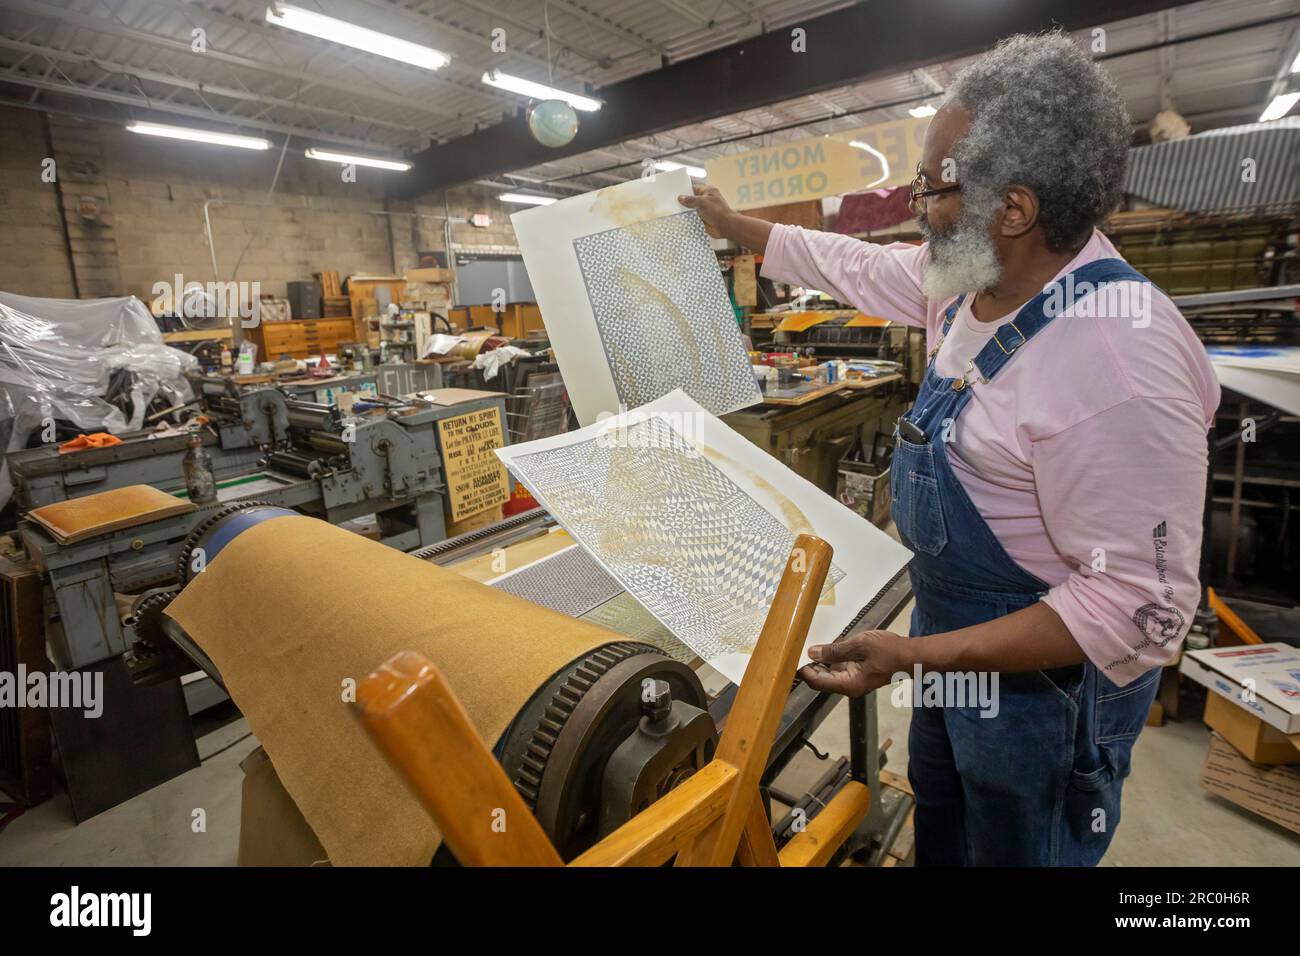 Detroit, Michigan – Amos Kennedy arbeitet in seiner Druckerei. Kennedy druckt Poster und veranstaltet Workshops zum Hochdruck. Stockfoto